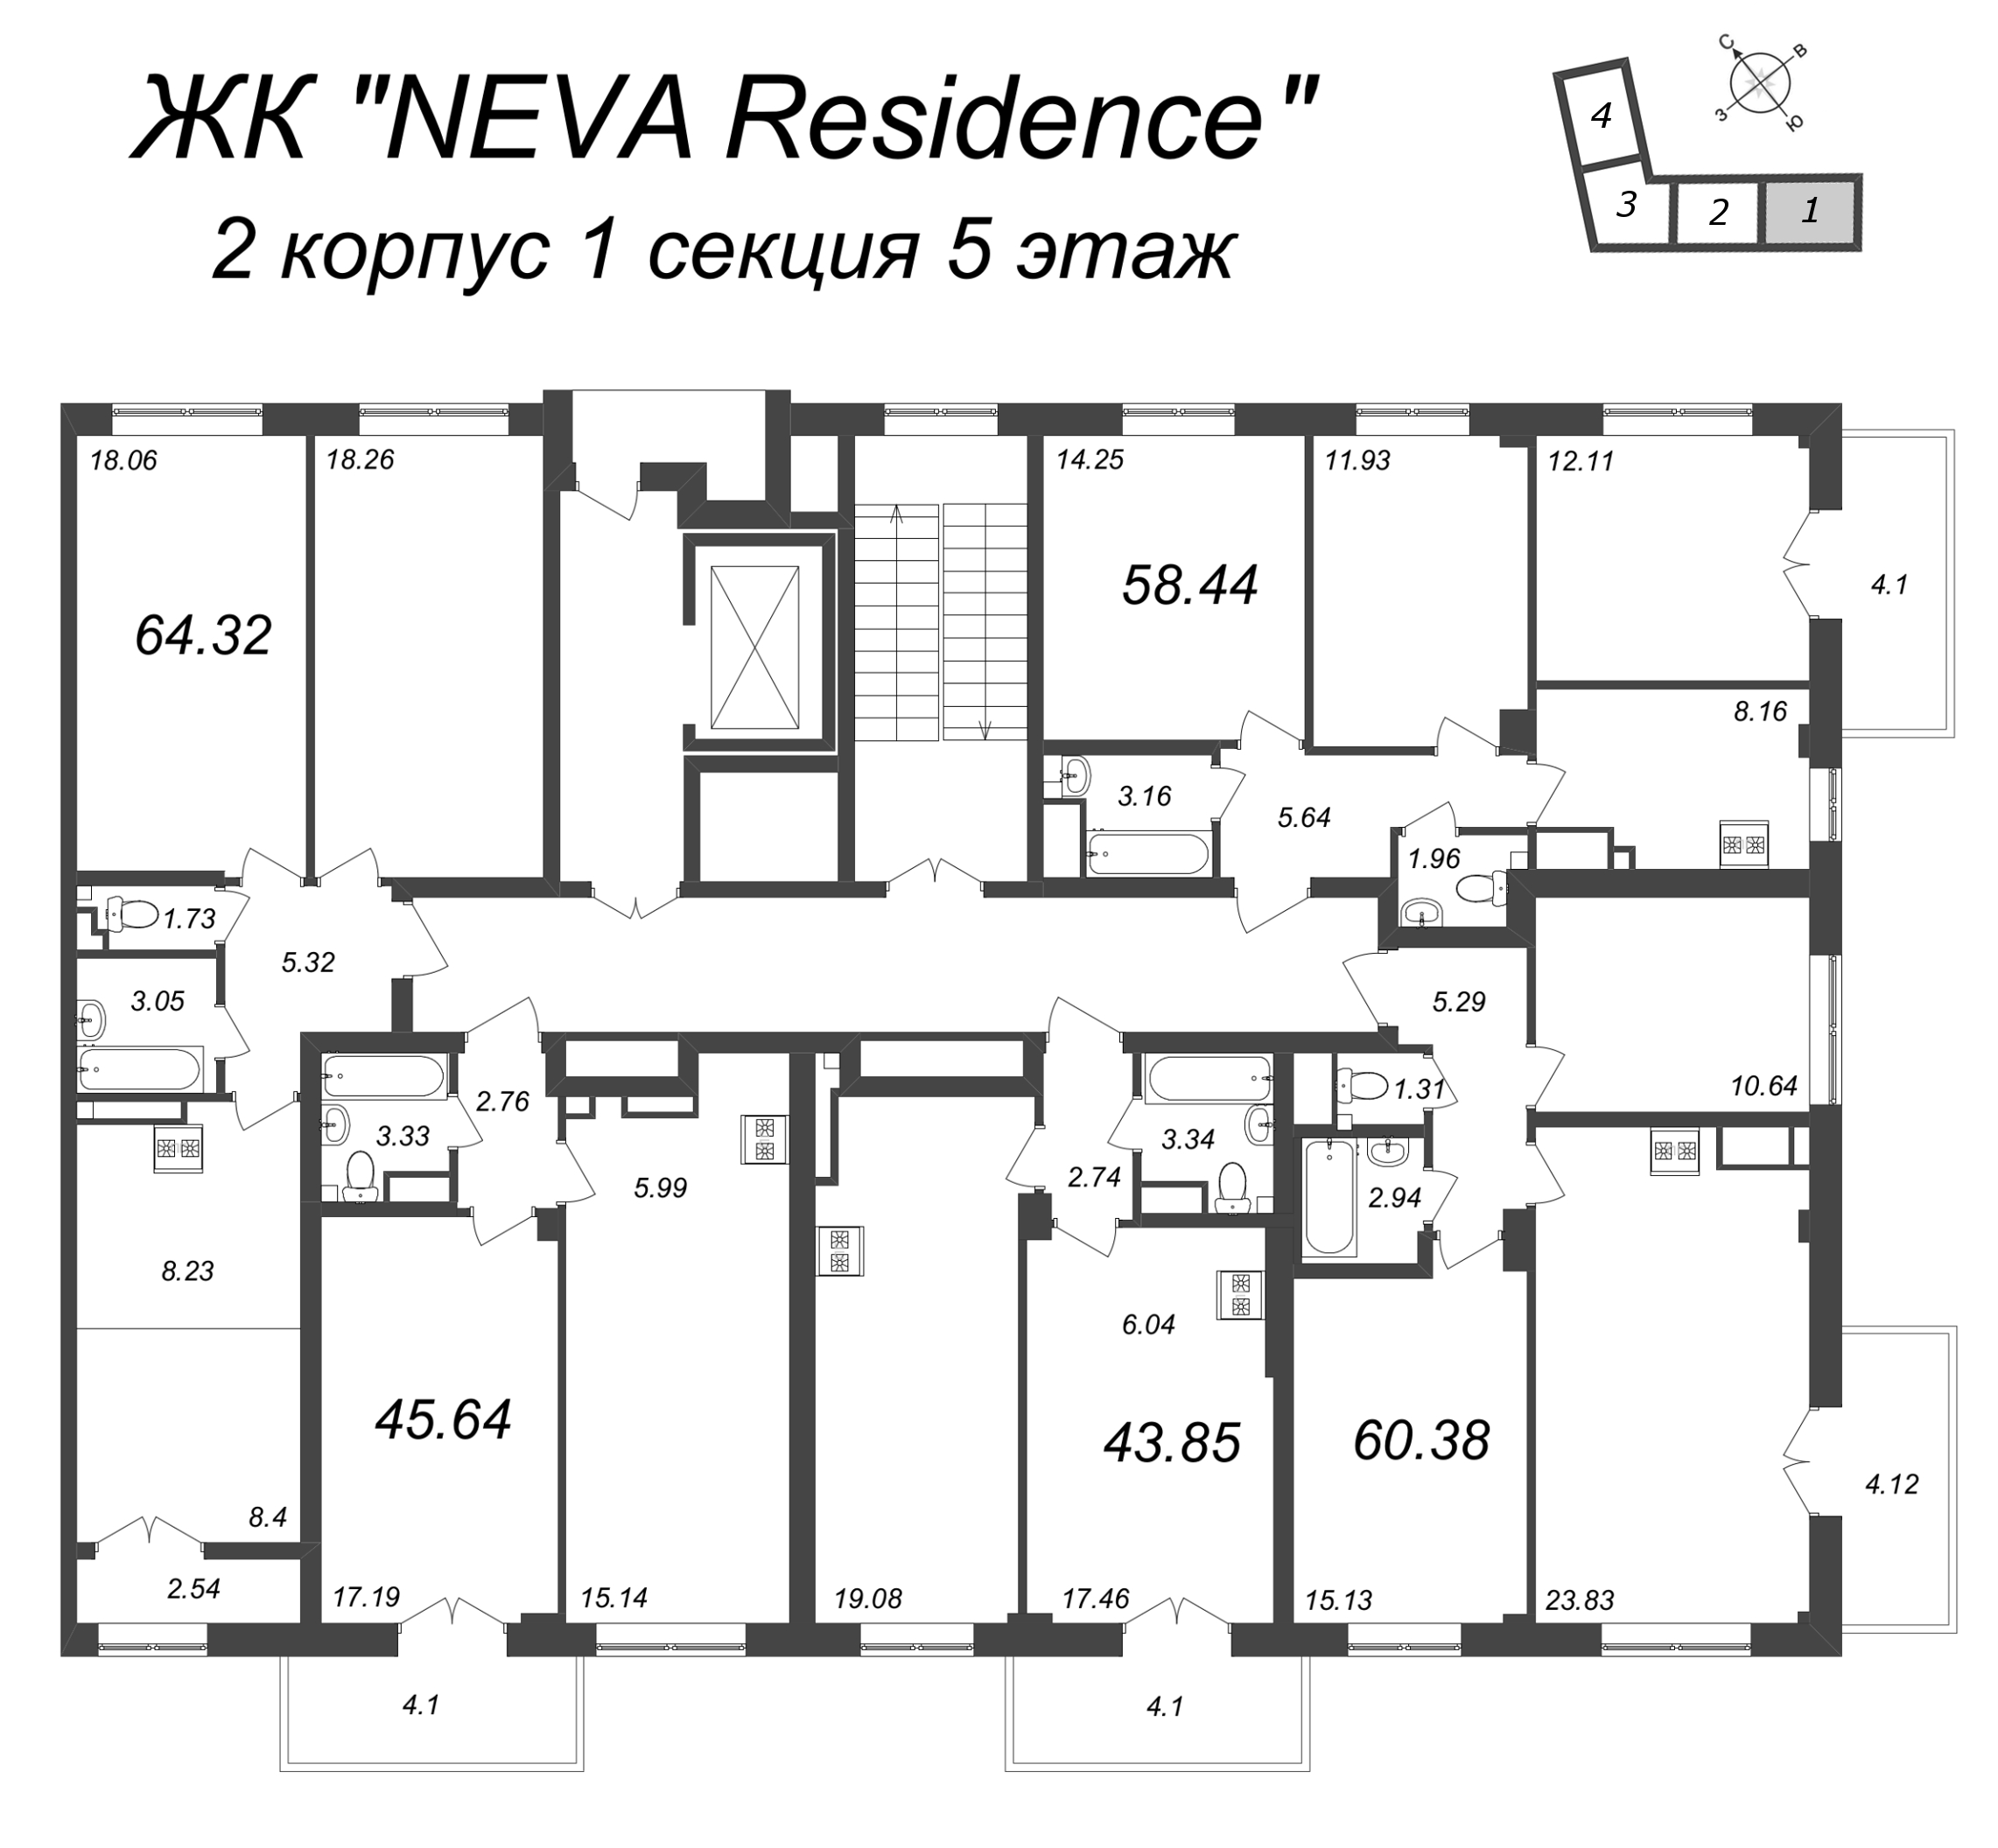 2-комнатная (Евро) квартира, 45.64 м² в ЖК "Neva Residence" - планировка этажа